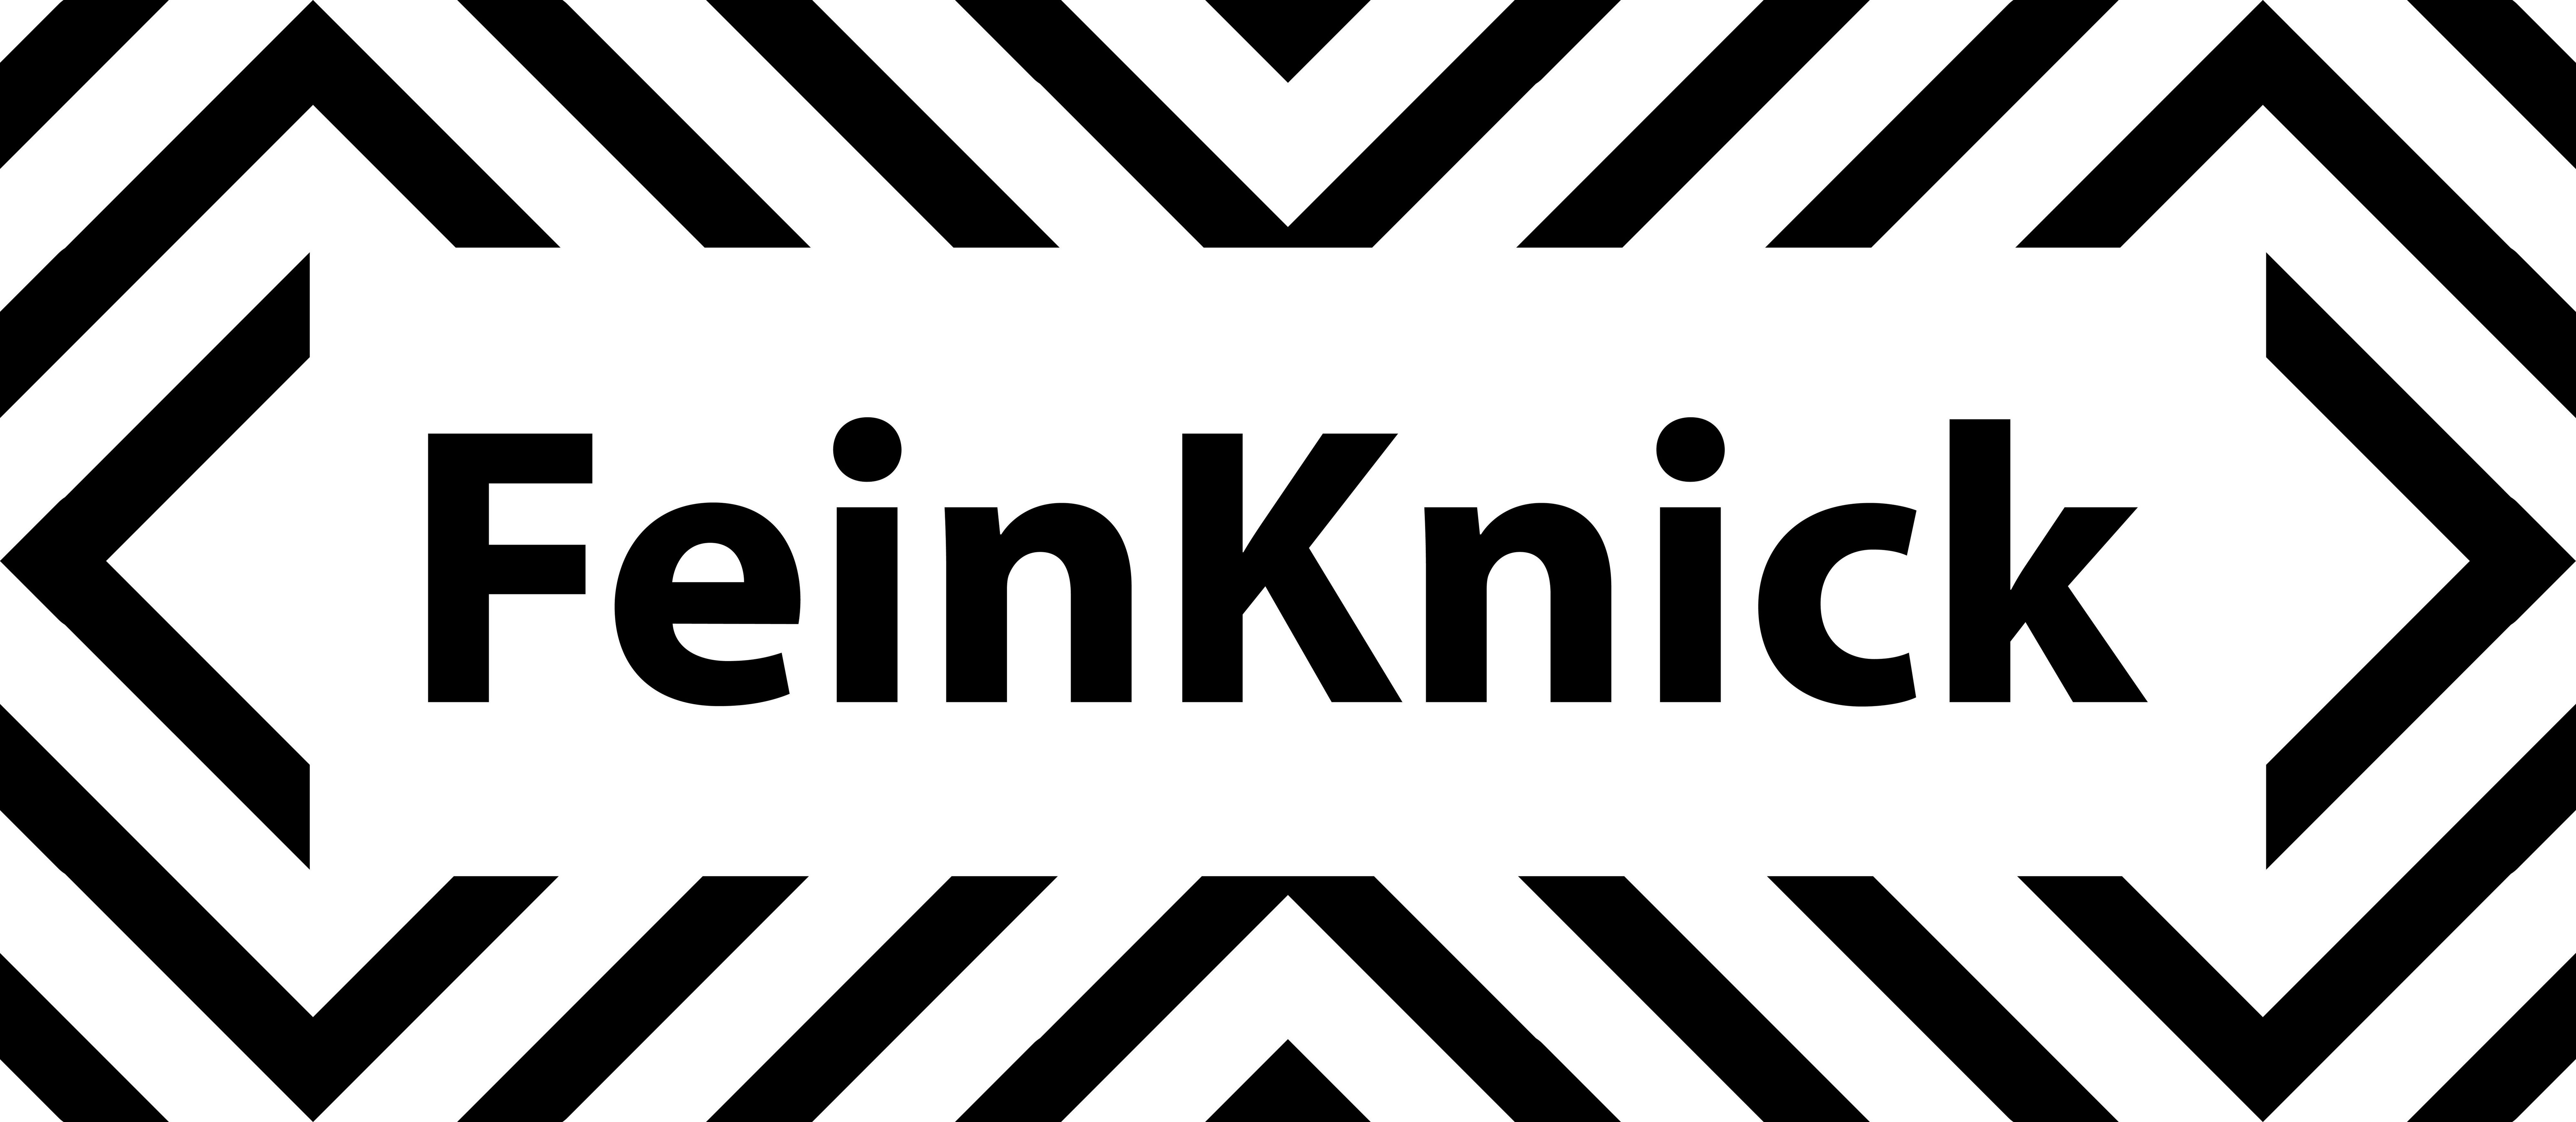 Feinknick